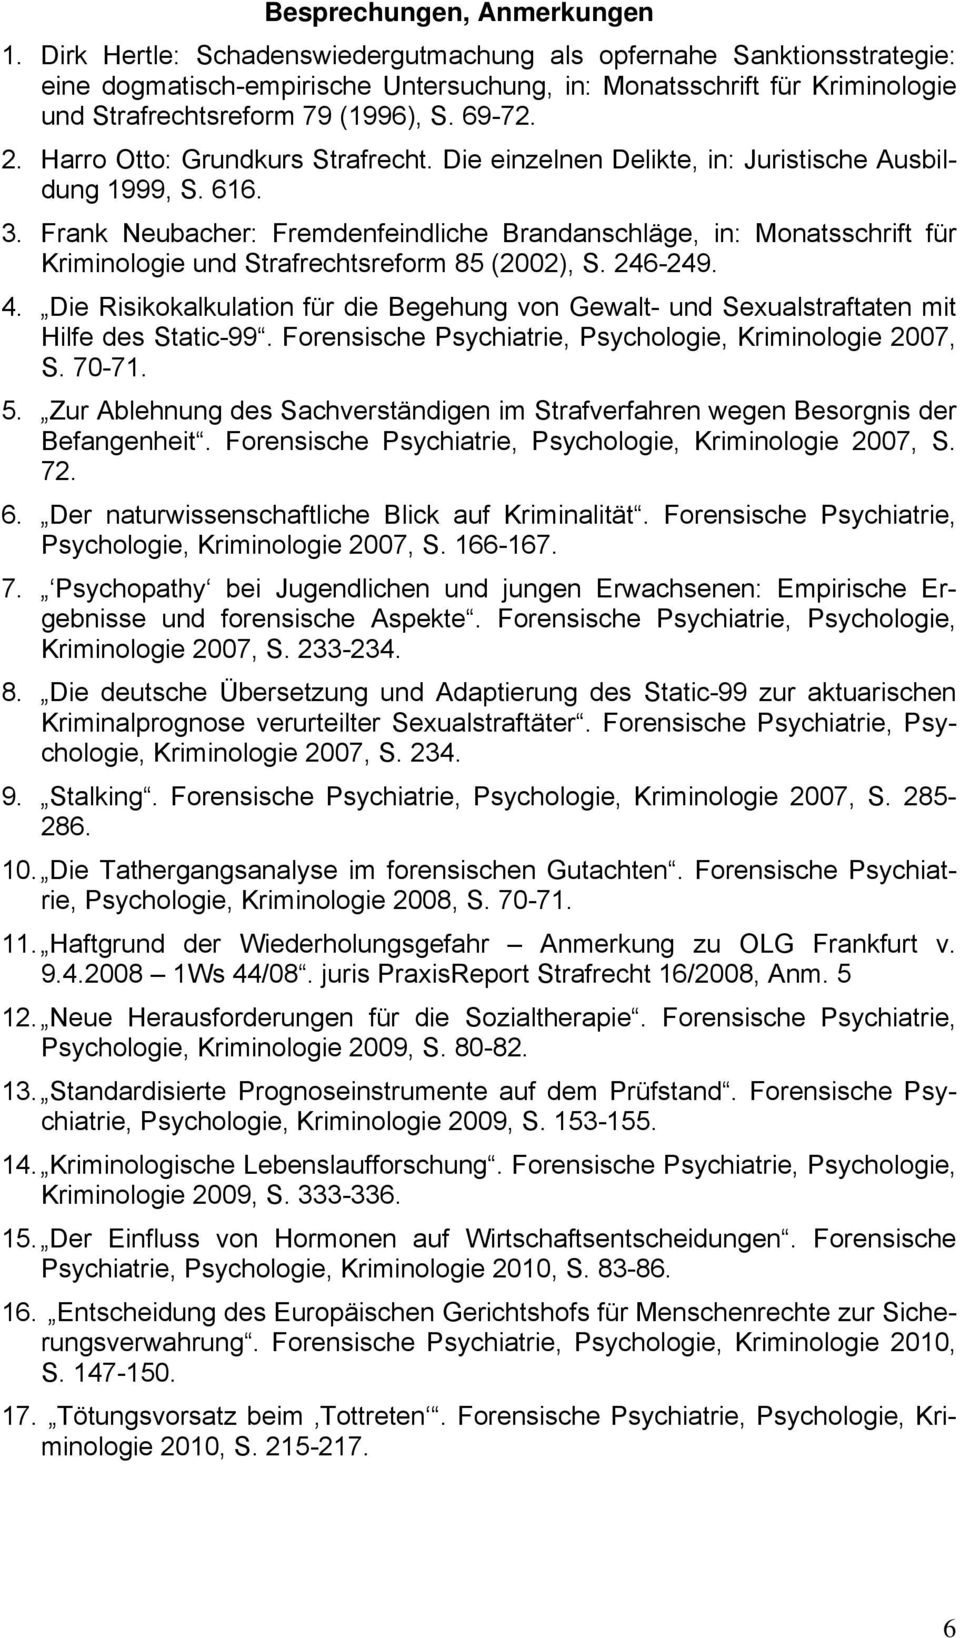 Harro Otto: Grundkurs Strafrecht. Die einzelnen Delikte, in: Juristische Ausbildung 1999, S. 616. 3.